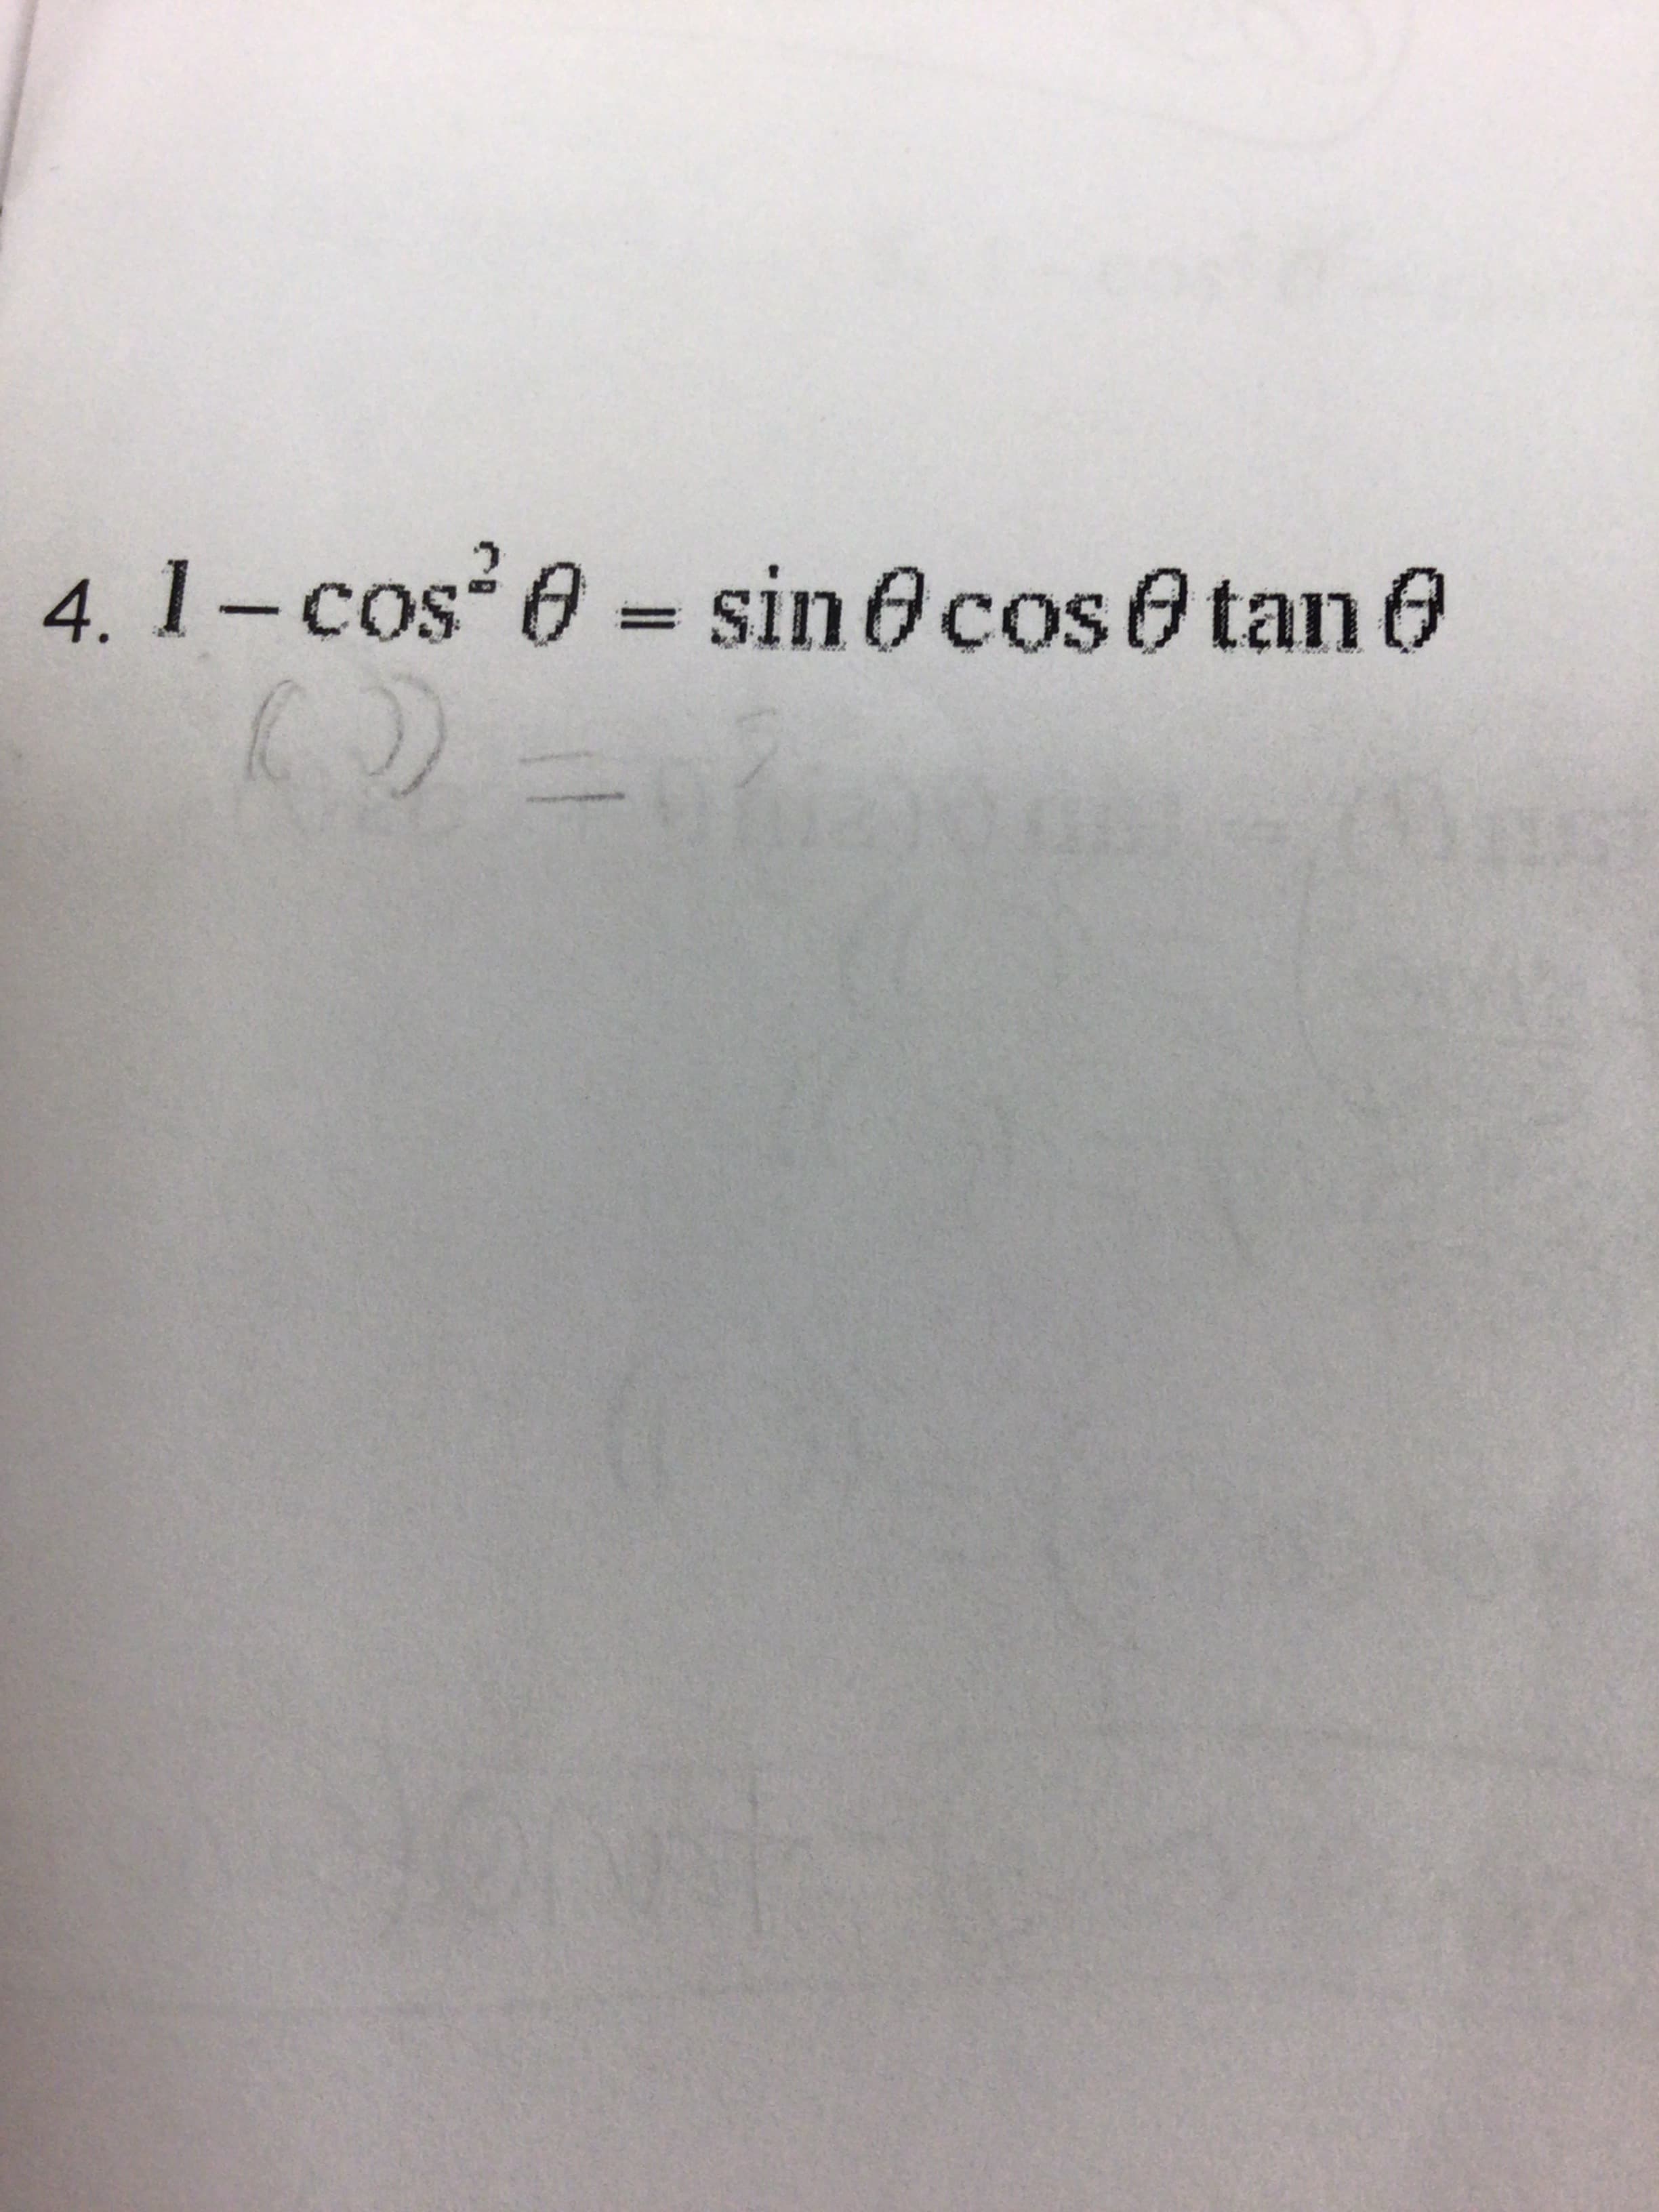 4. 1- cos 0 = sin 0cos0 tan 0
„Soɔ-
